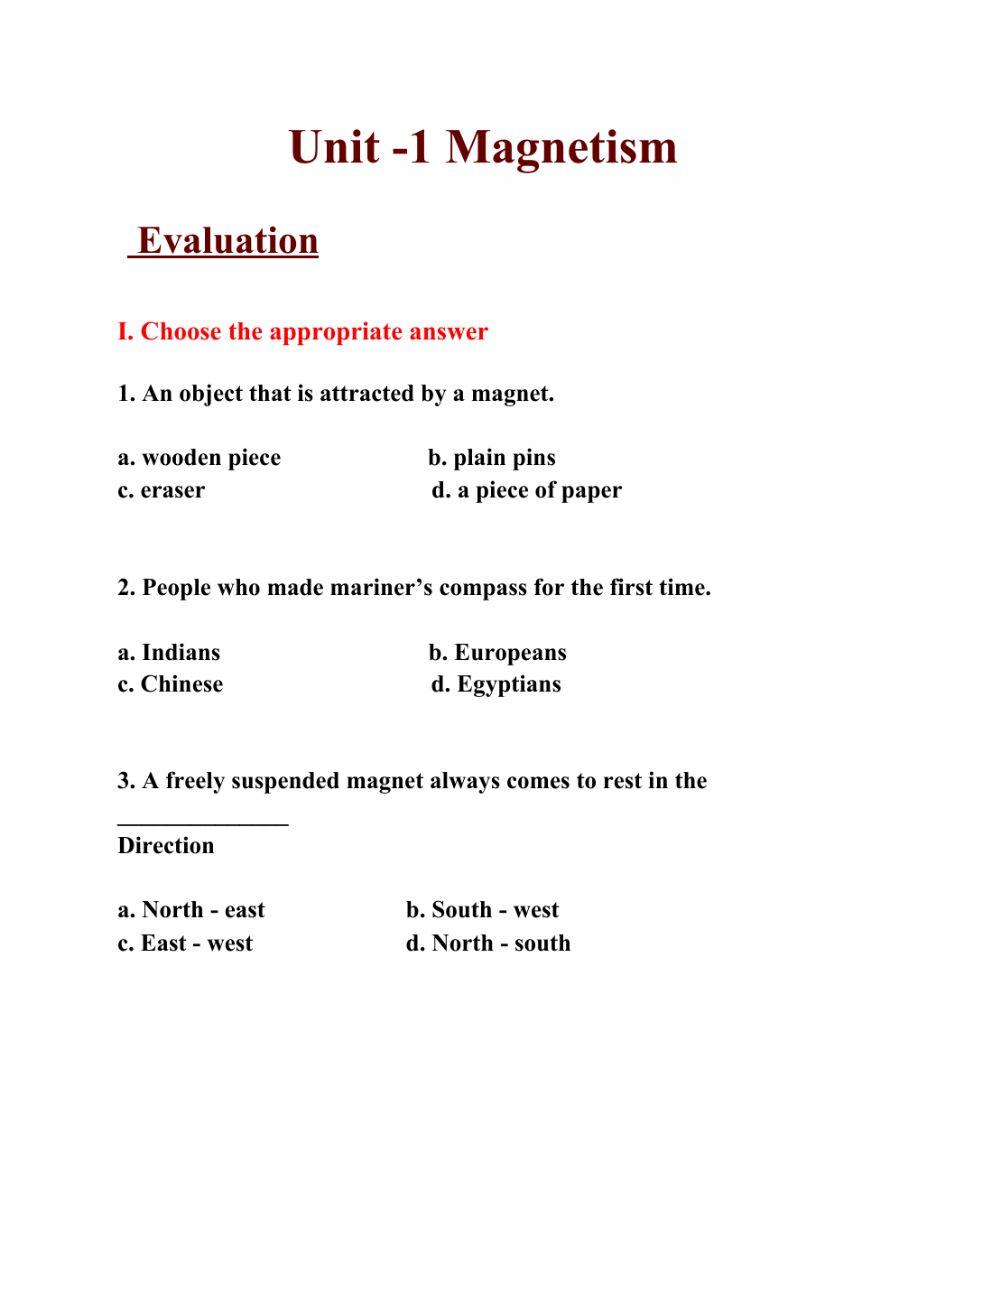 Magnetism worksheet